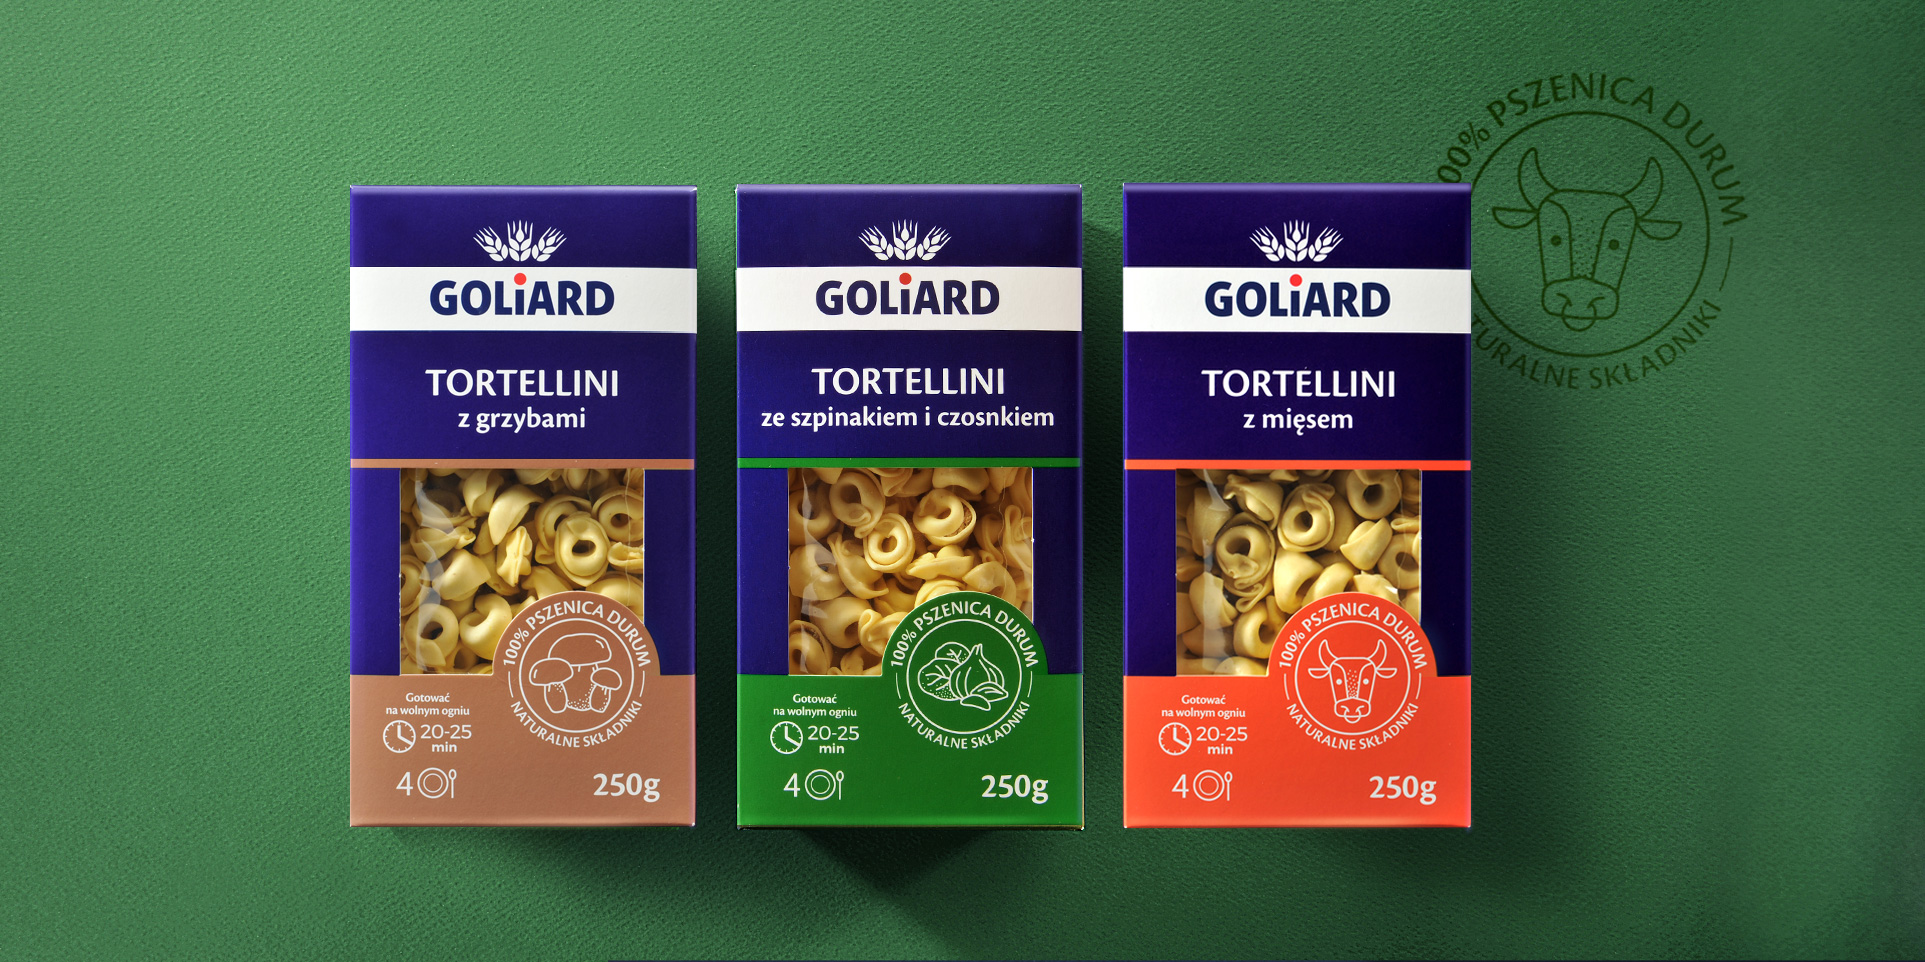 Nowy design opakowań tortellini marki Goliard.